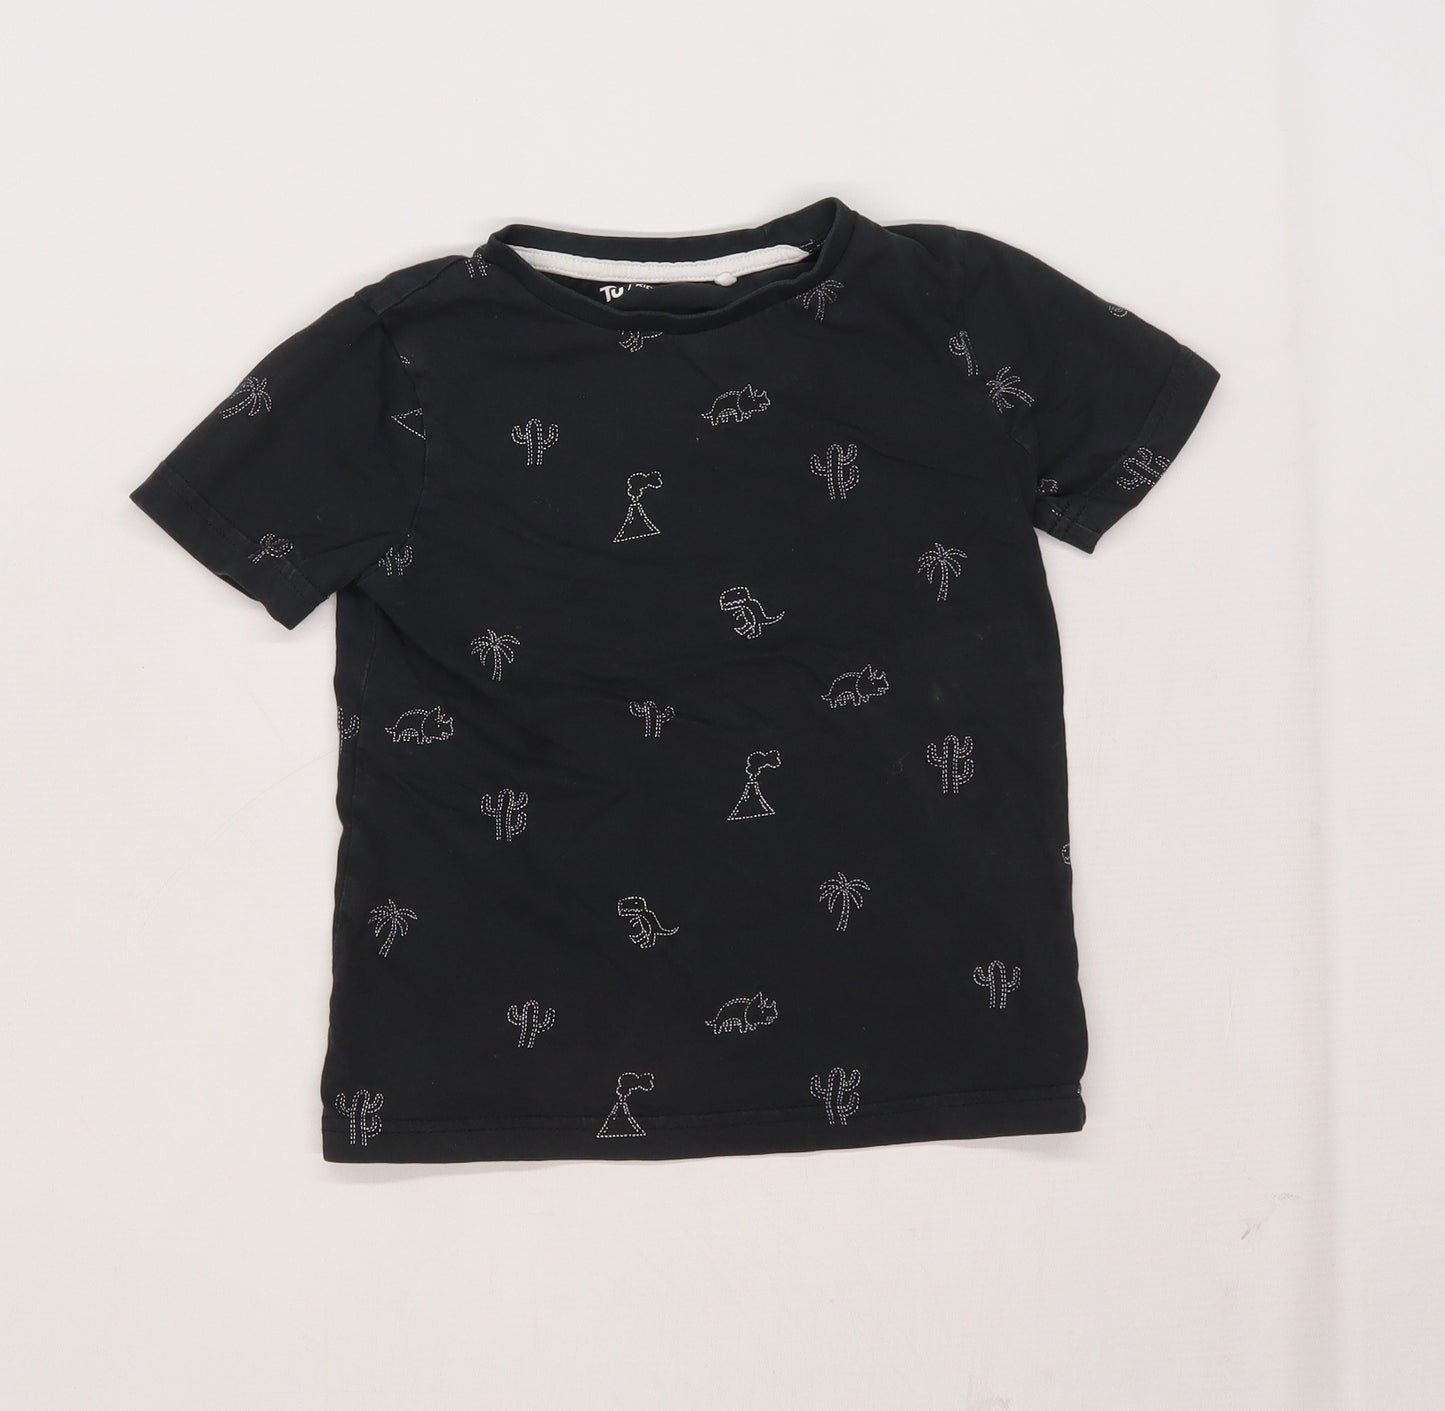 TU Boys Black   Basic T-Shirt Size 3-4 Years  - Dinosaur